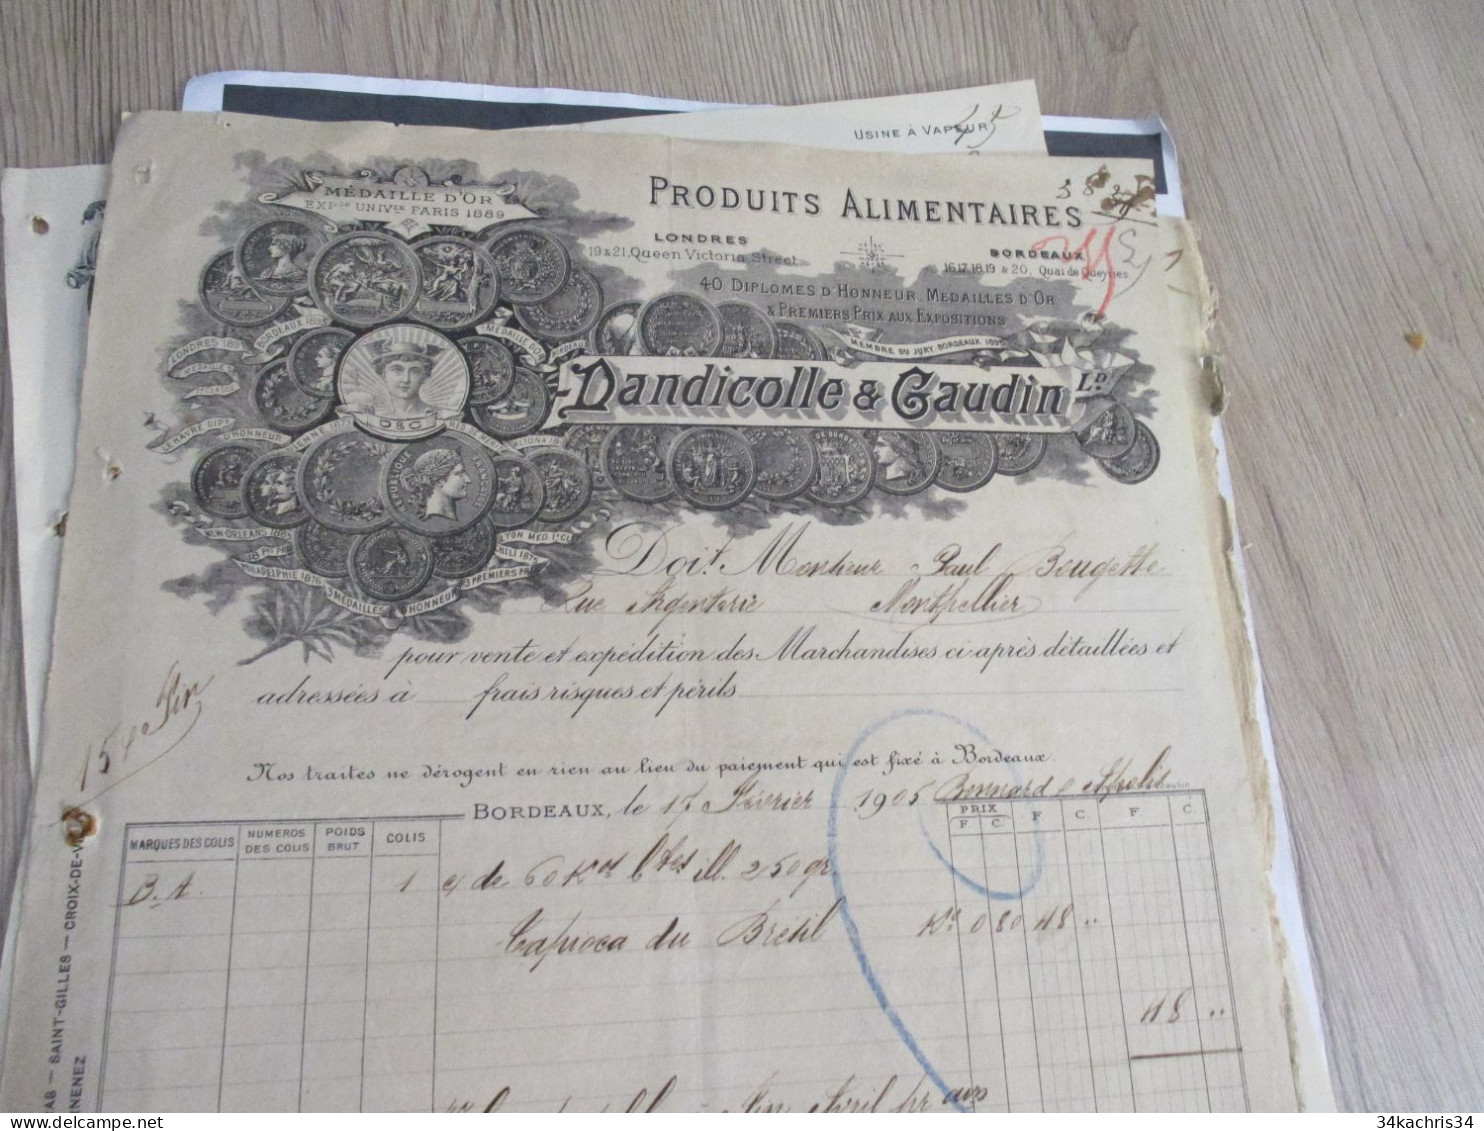 Facture Illustrée 1905 Bordeaux Dandicolle Gudin Produits Alimentaires - Food